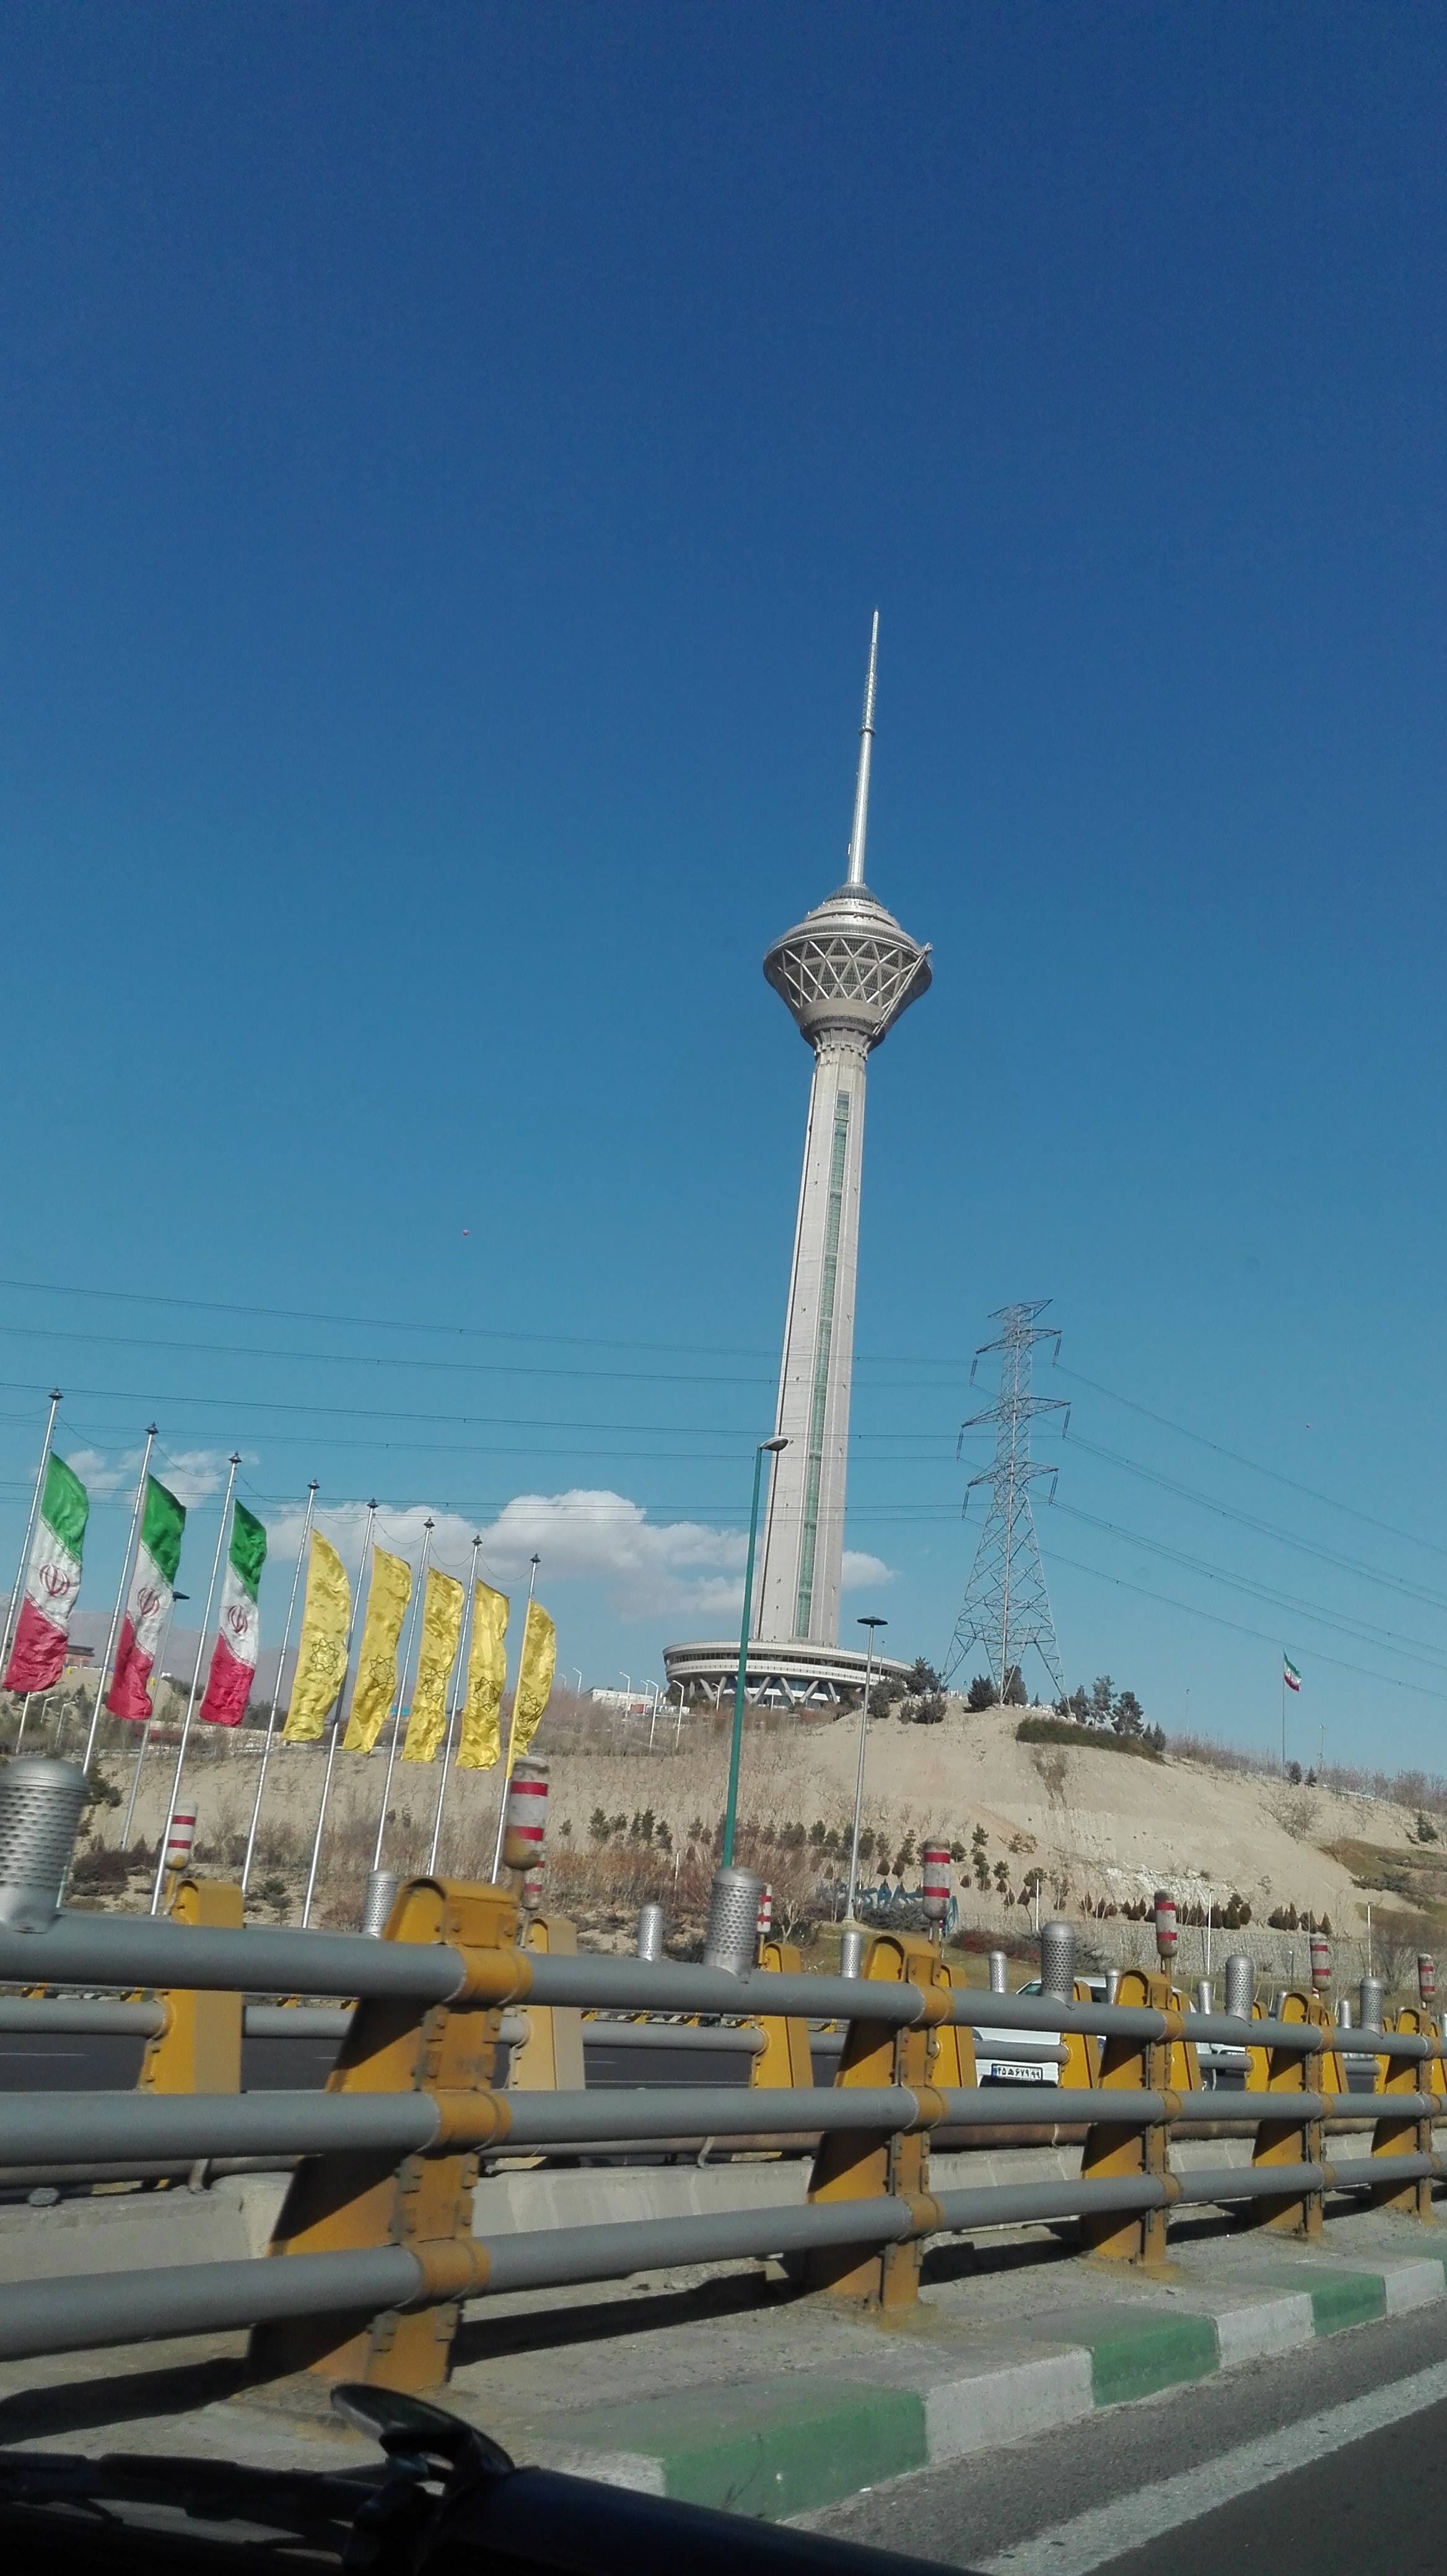 عکس تهران برج میلاد برای پروفایل